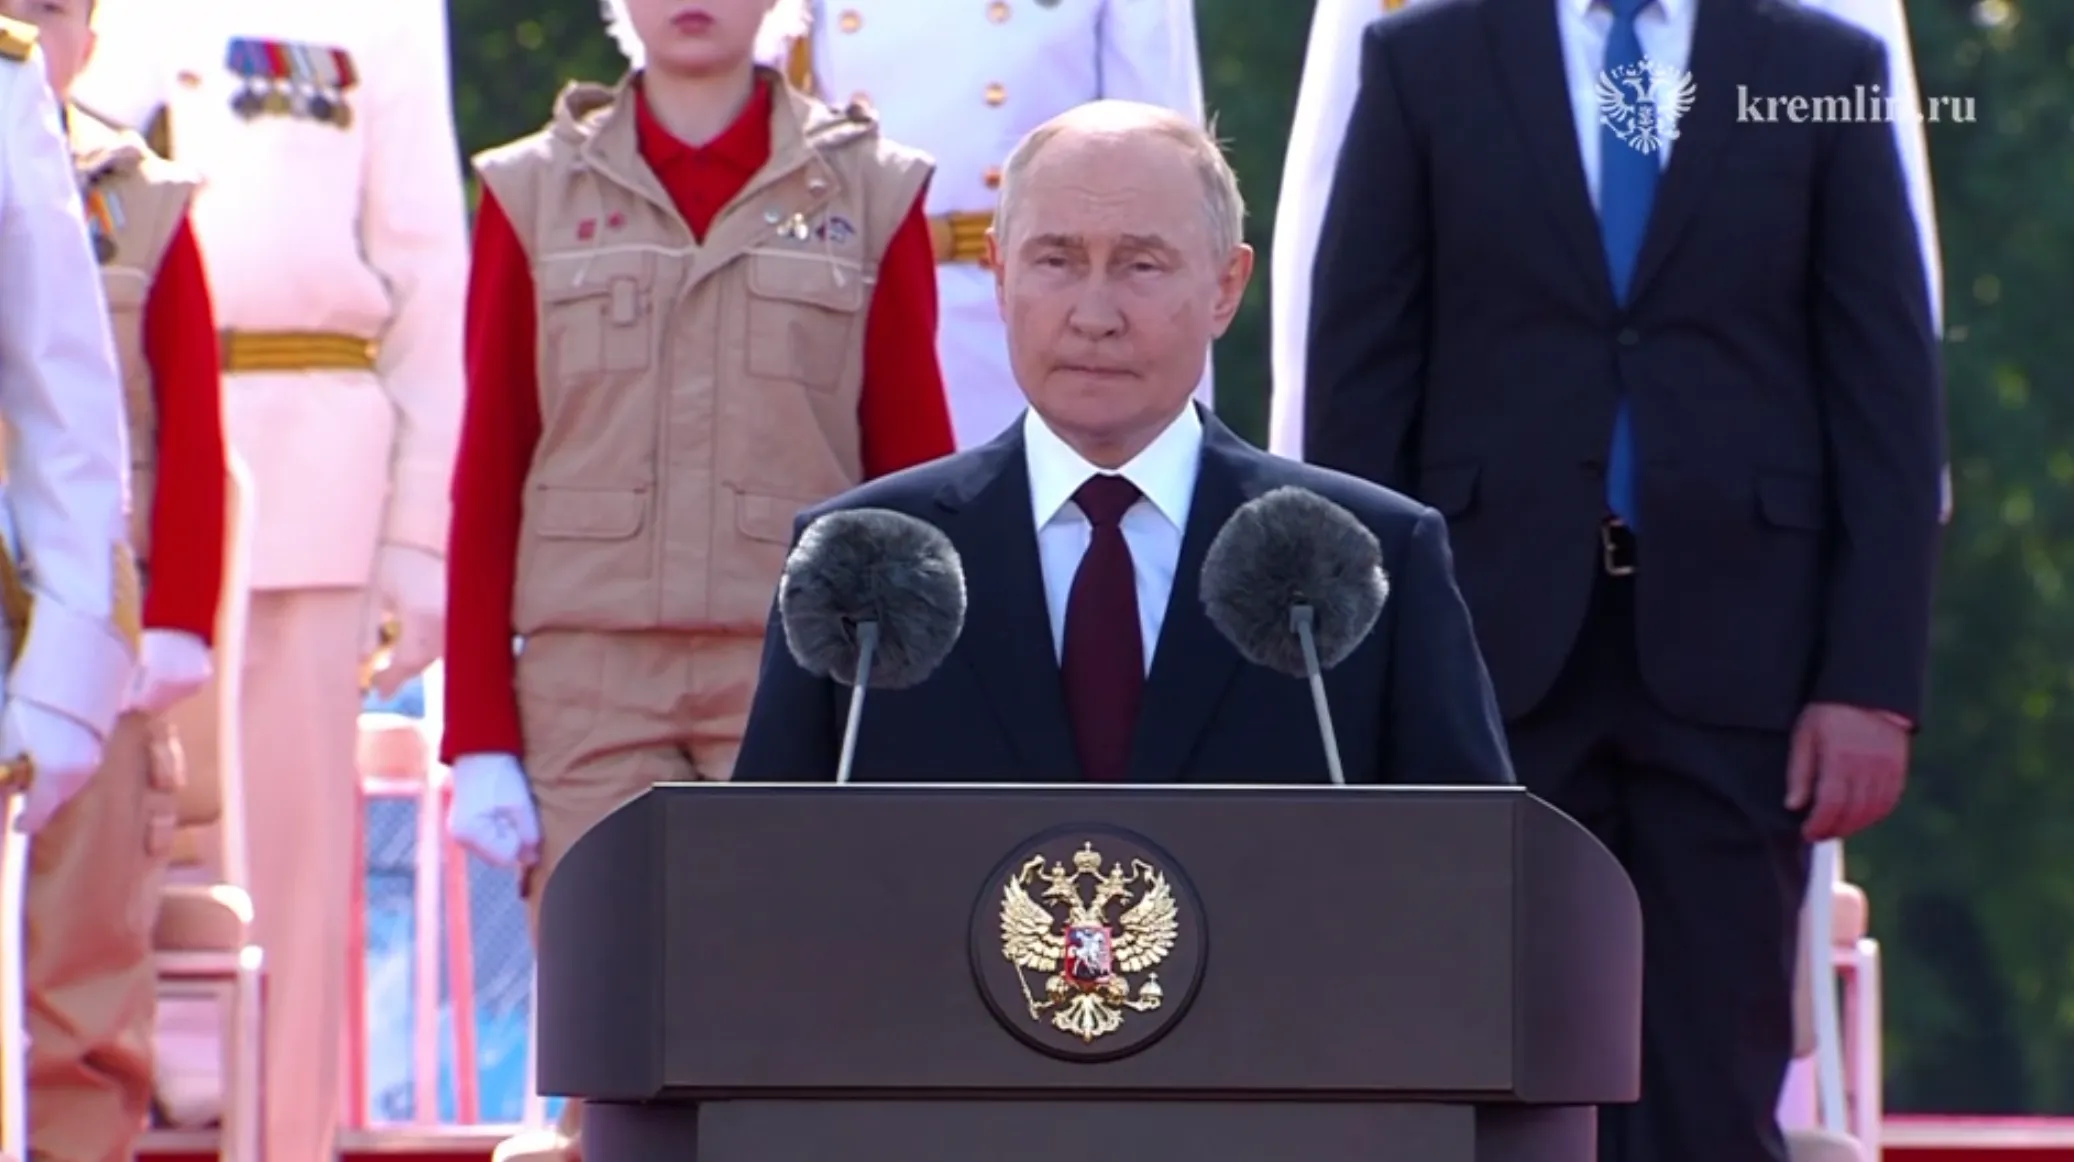 Путин завершил поздравление в честь дня ВМФ словами: Слава Военно-морскому флоту! За Россию!